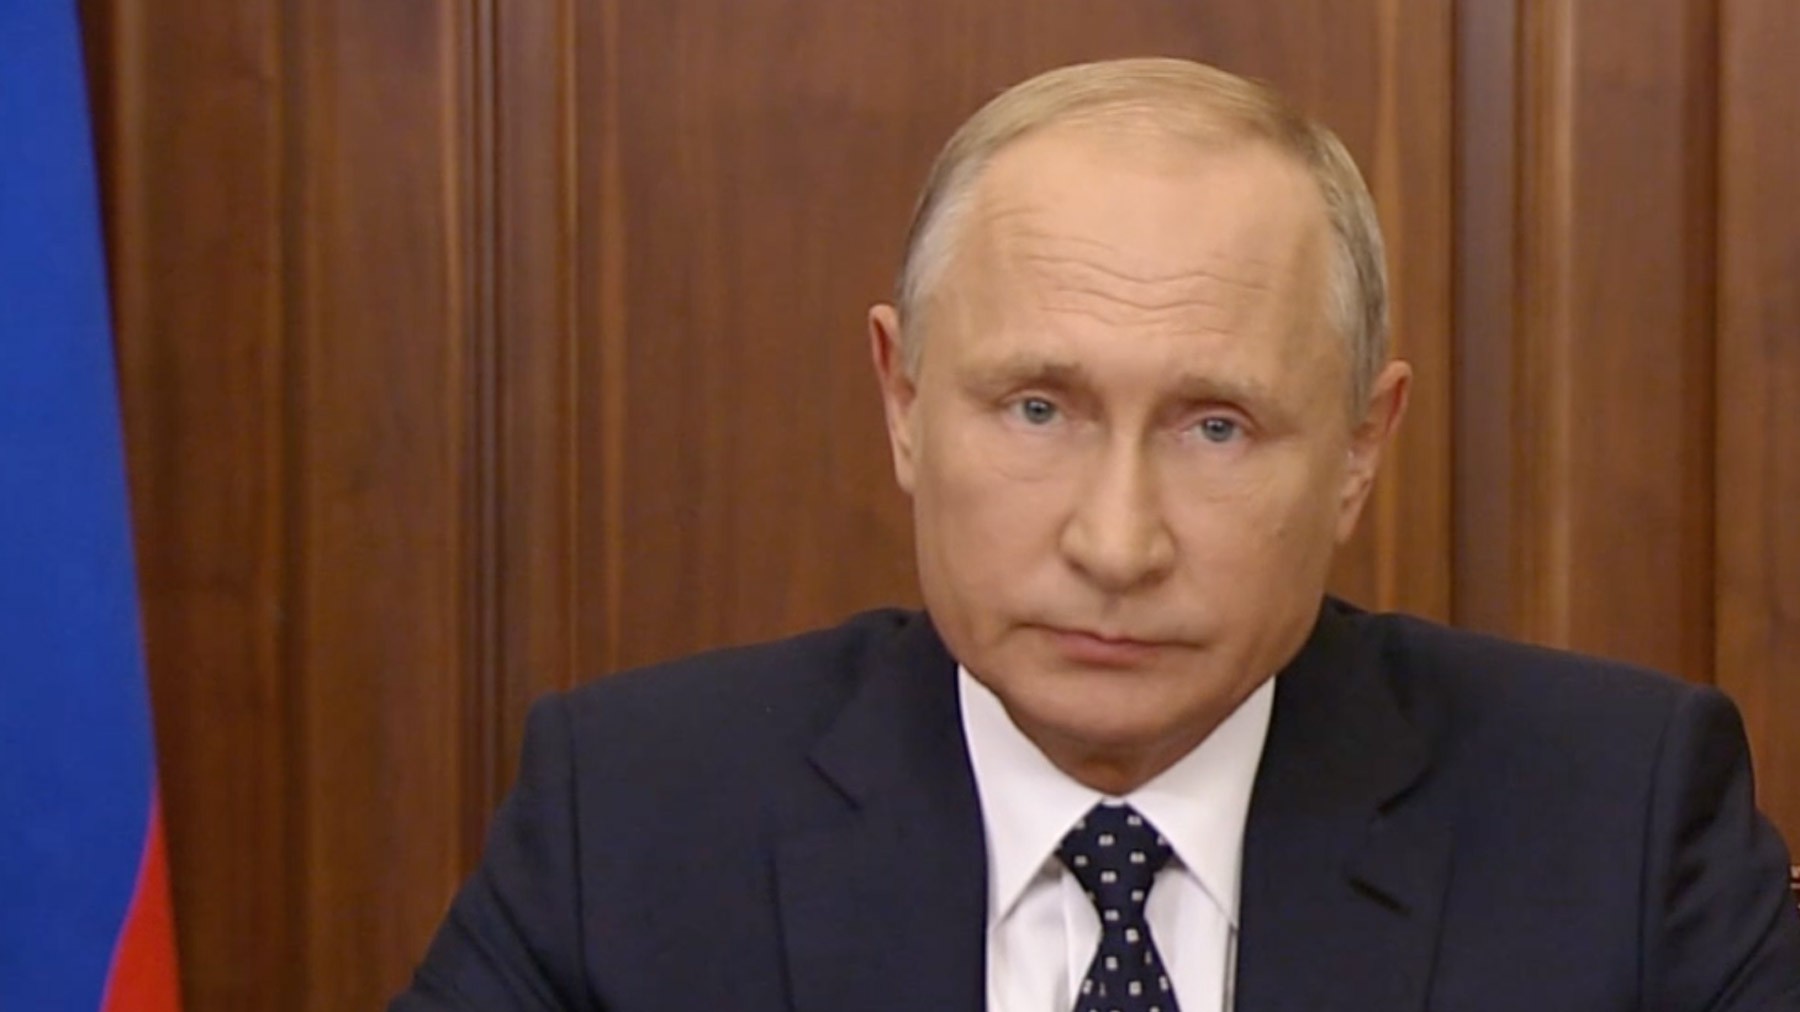 Dailystorm - Психологи заметили лукавство в обращении Путина